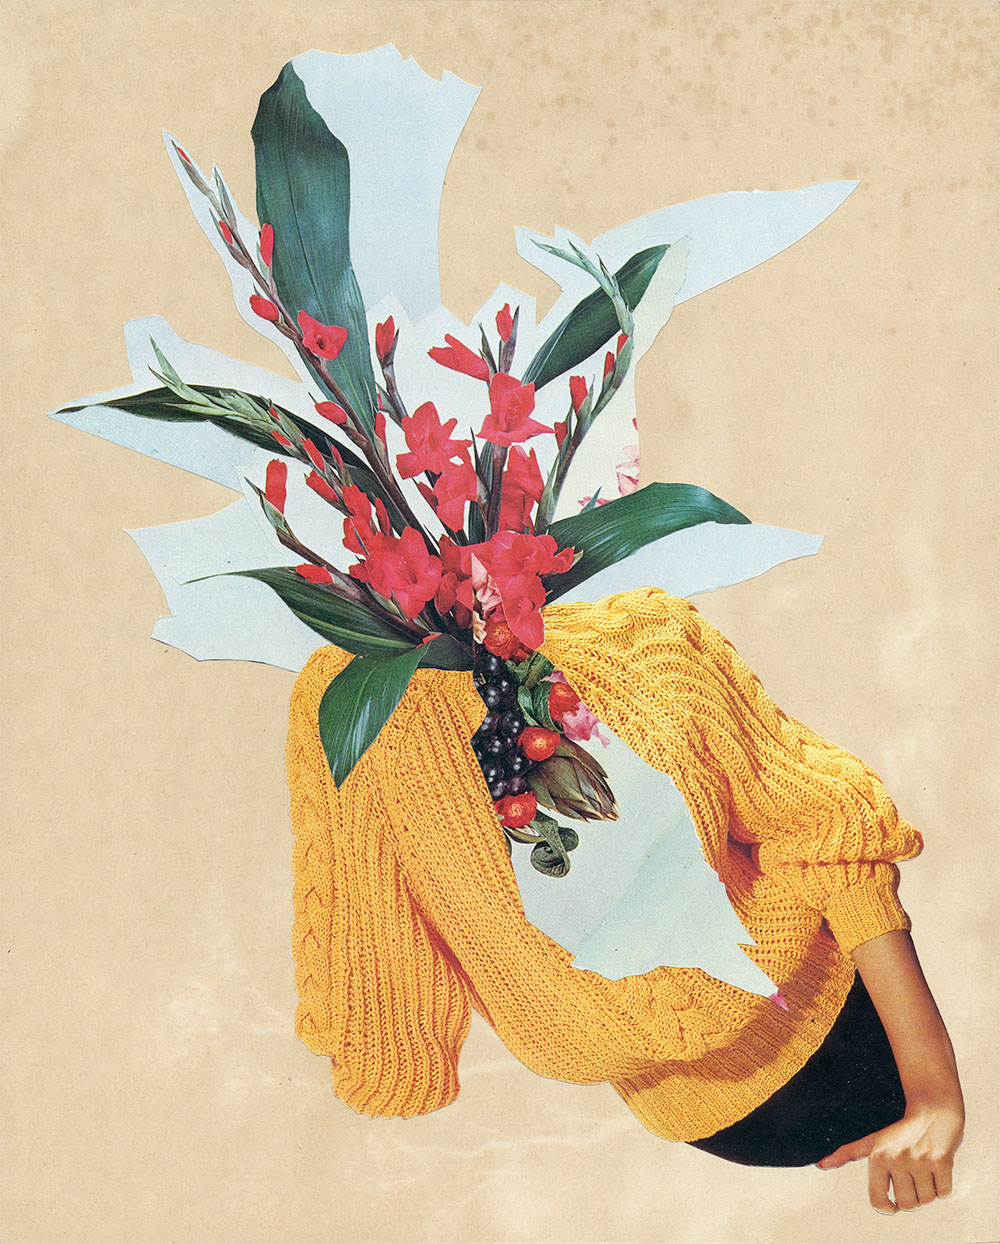 Blumenstraußkopf in gelben Pulli - original Pflanzen, Blüten, Kakteen mit Klamotten, Kleidung Plants with Pants Collage von Markus Wuelbern